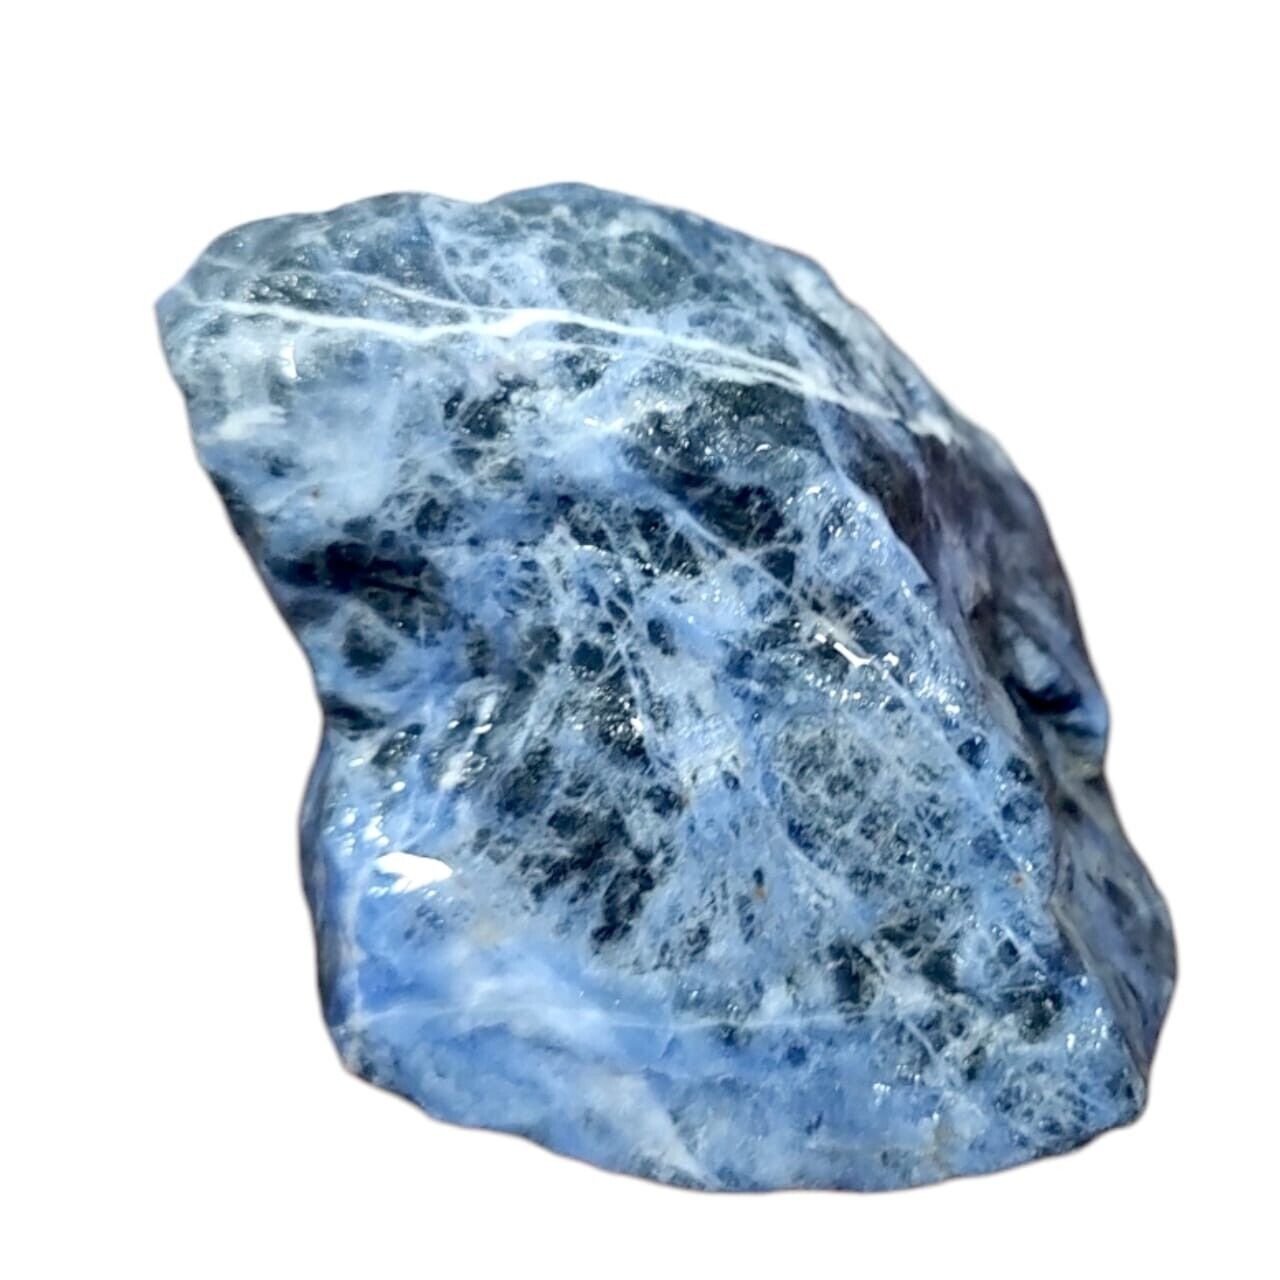 198g Sodalite Quartz Crystal - Genuine & High-Quality Natural Healing Gem